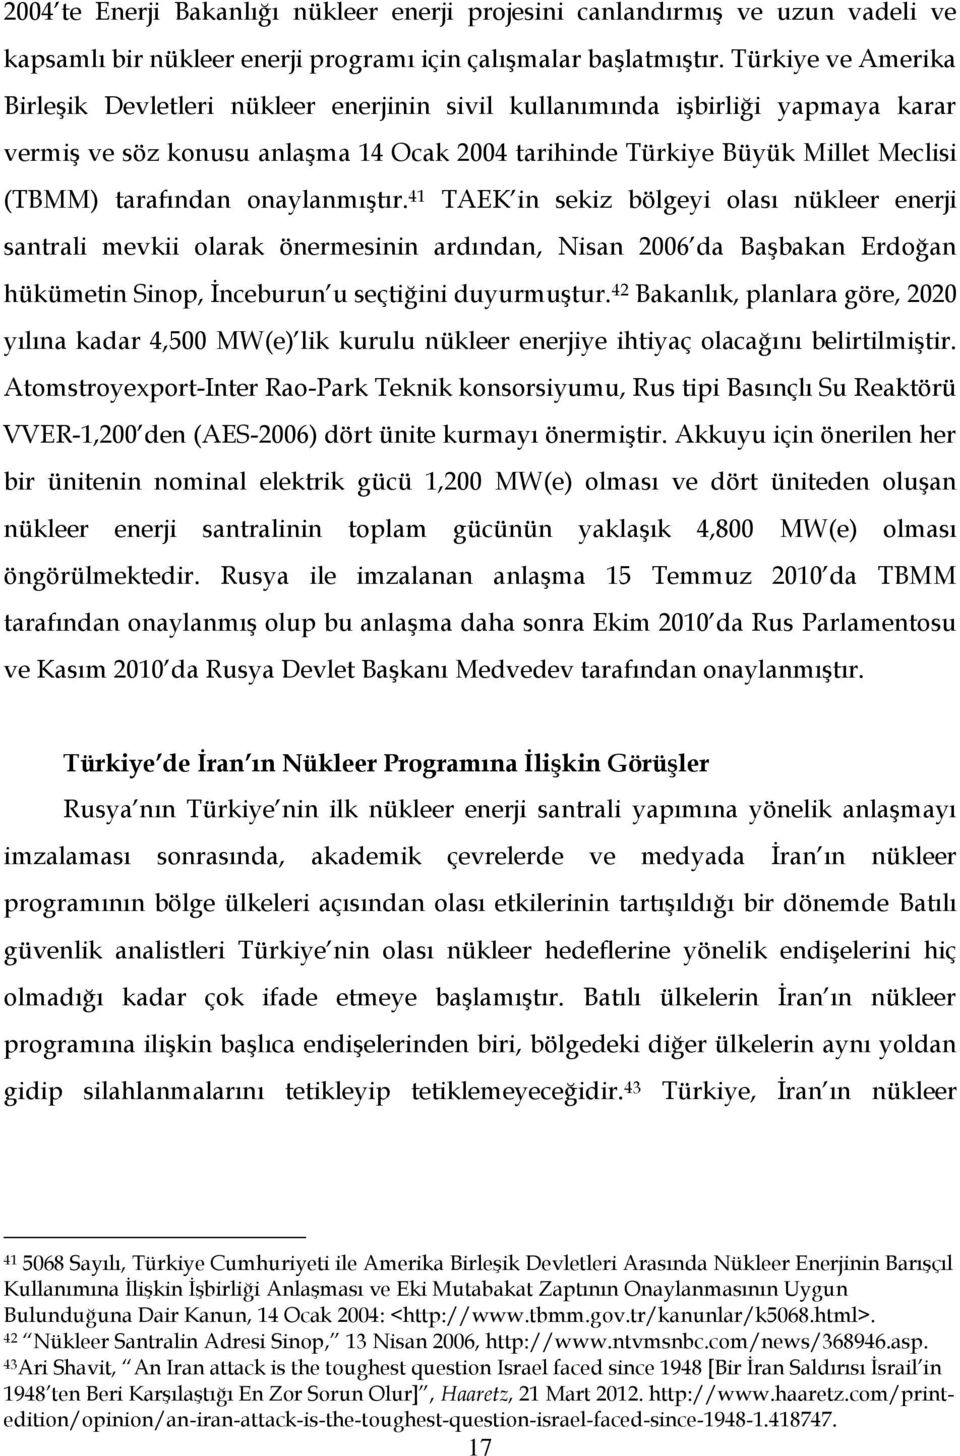 onaylanmıştır. 41 TAEK in sekiz bölgeyi olası nükleer enerji santrali mevkii olarak önermesinin ardından, Nisan 2006 da Başbakan Erdoğan hükümetin Sinop, İnceburun u seçtiğini duyurmuştur.